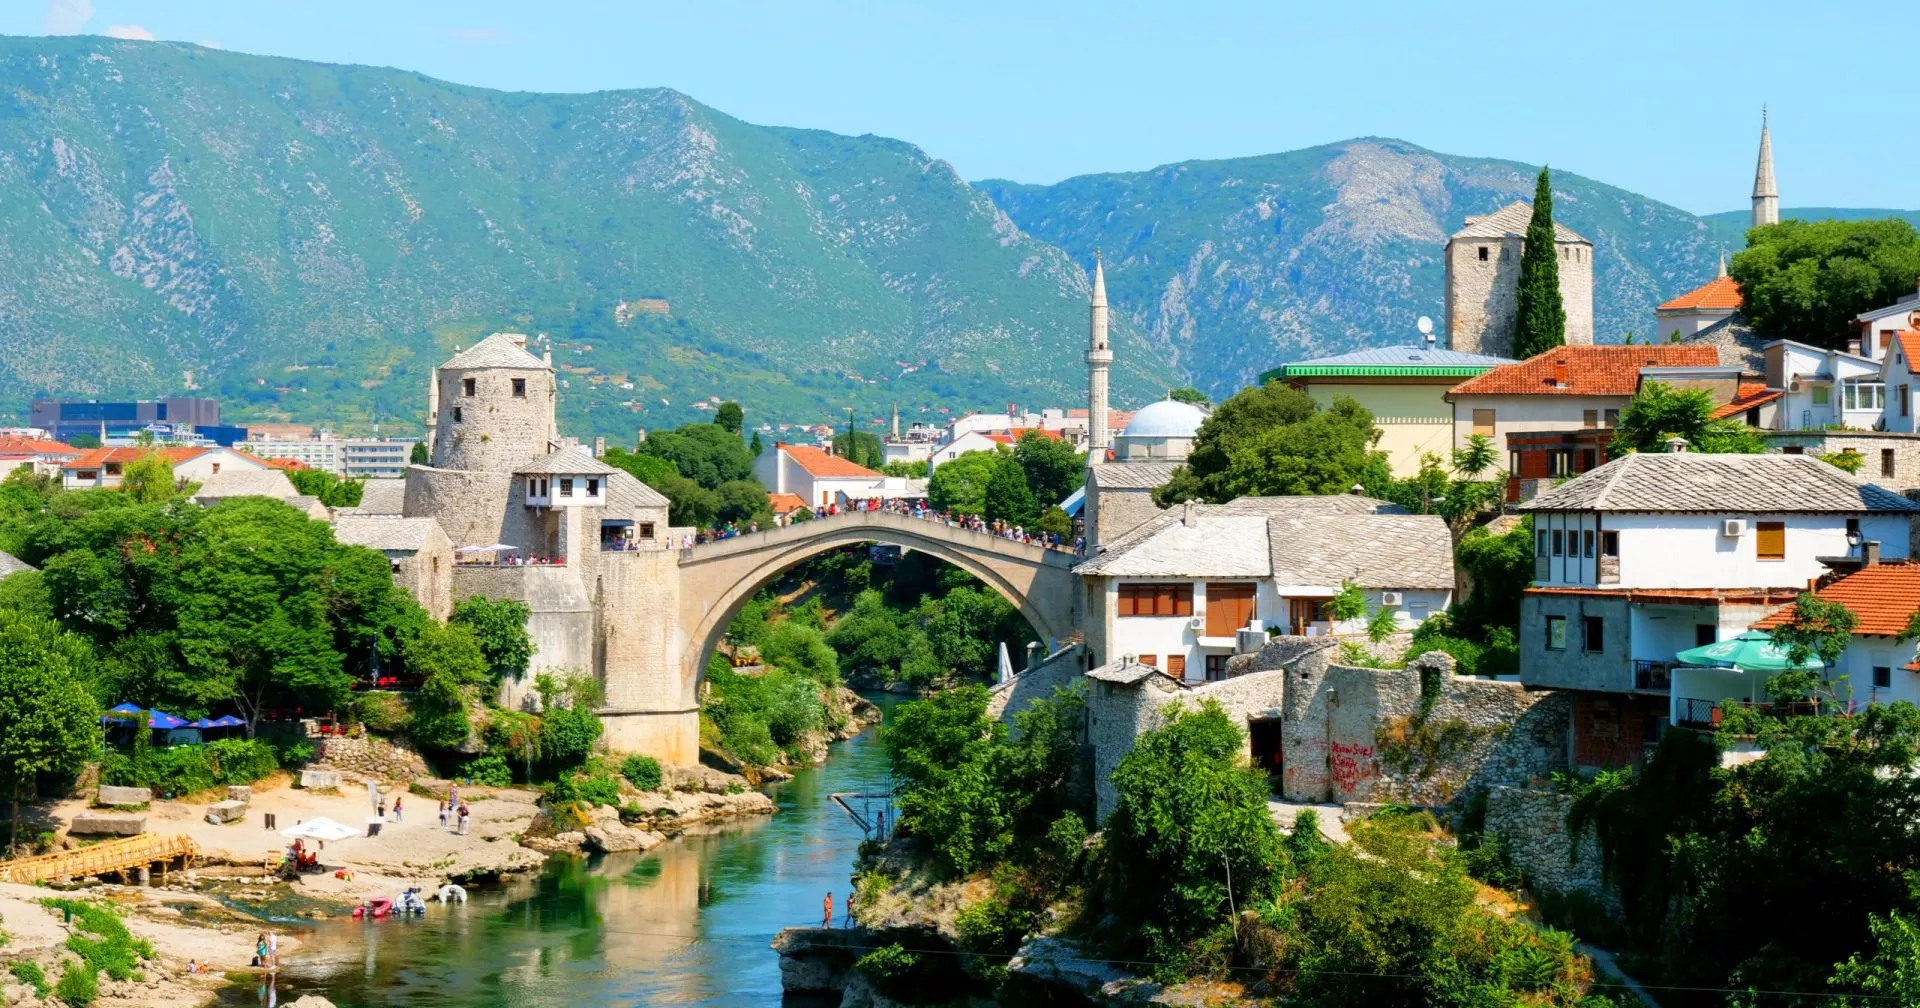 Bosnien und Herzegowina, Mostar mit Moschee und türkisfarbenem Fluss